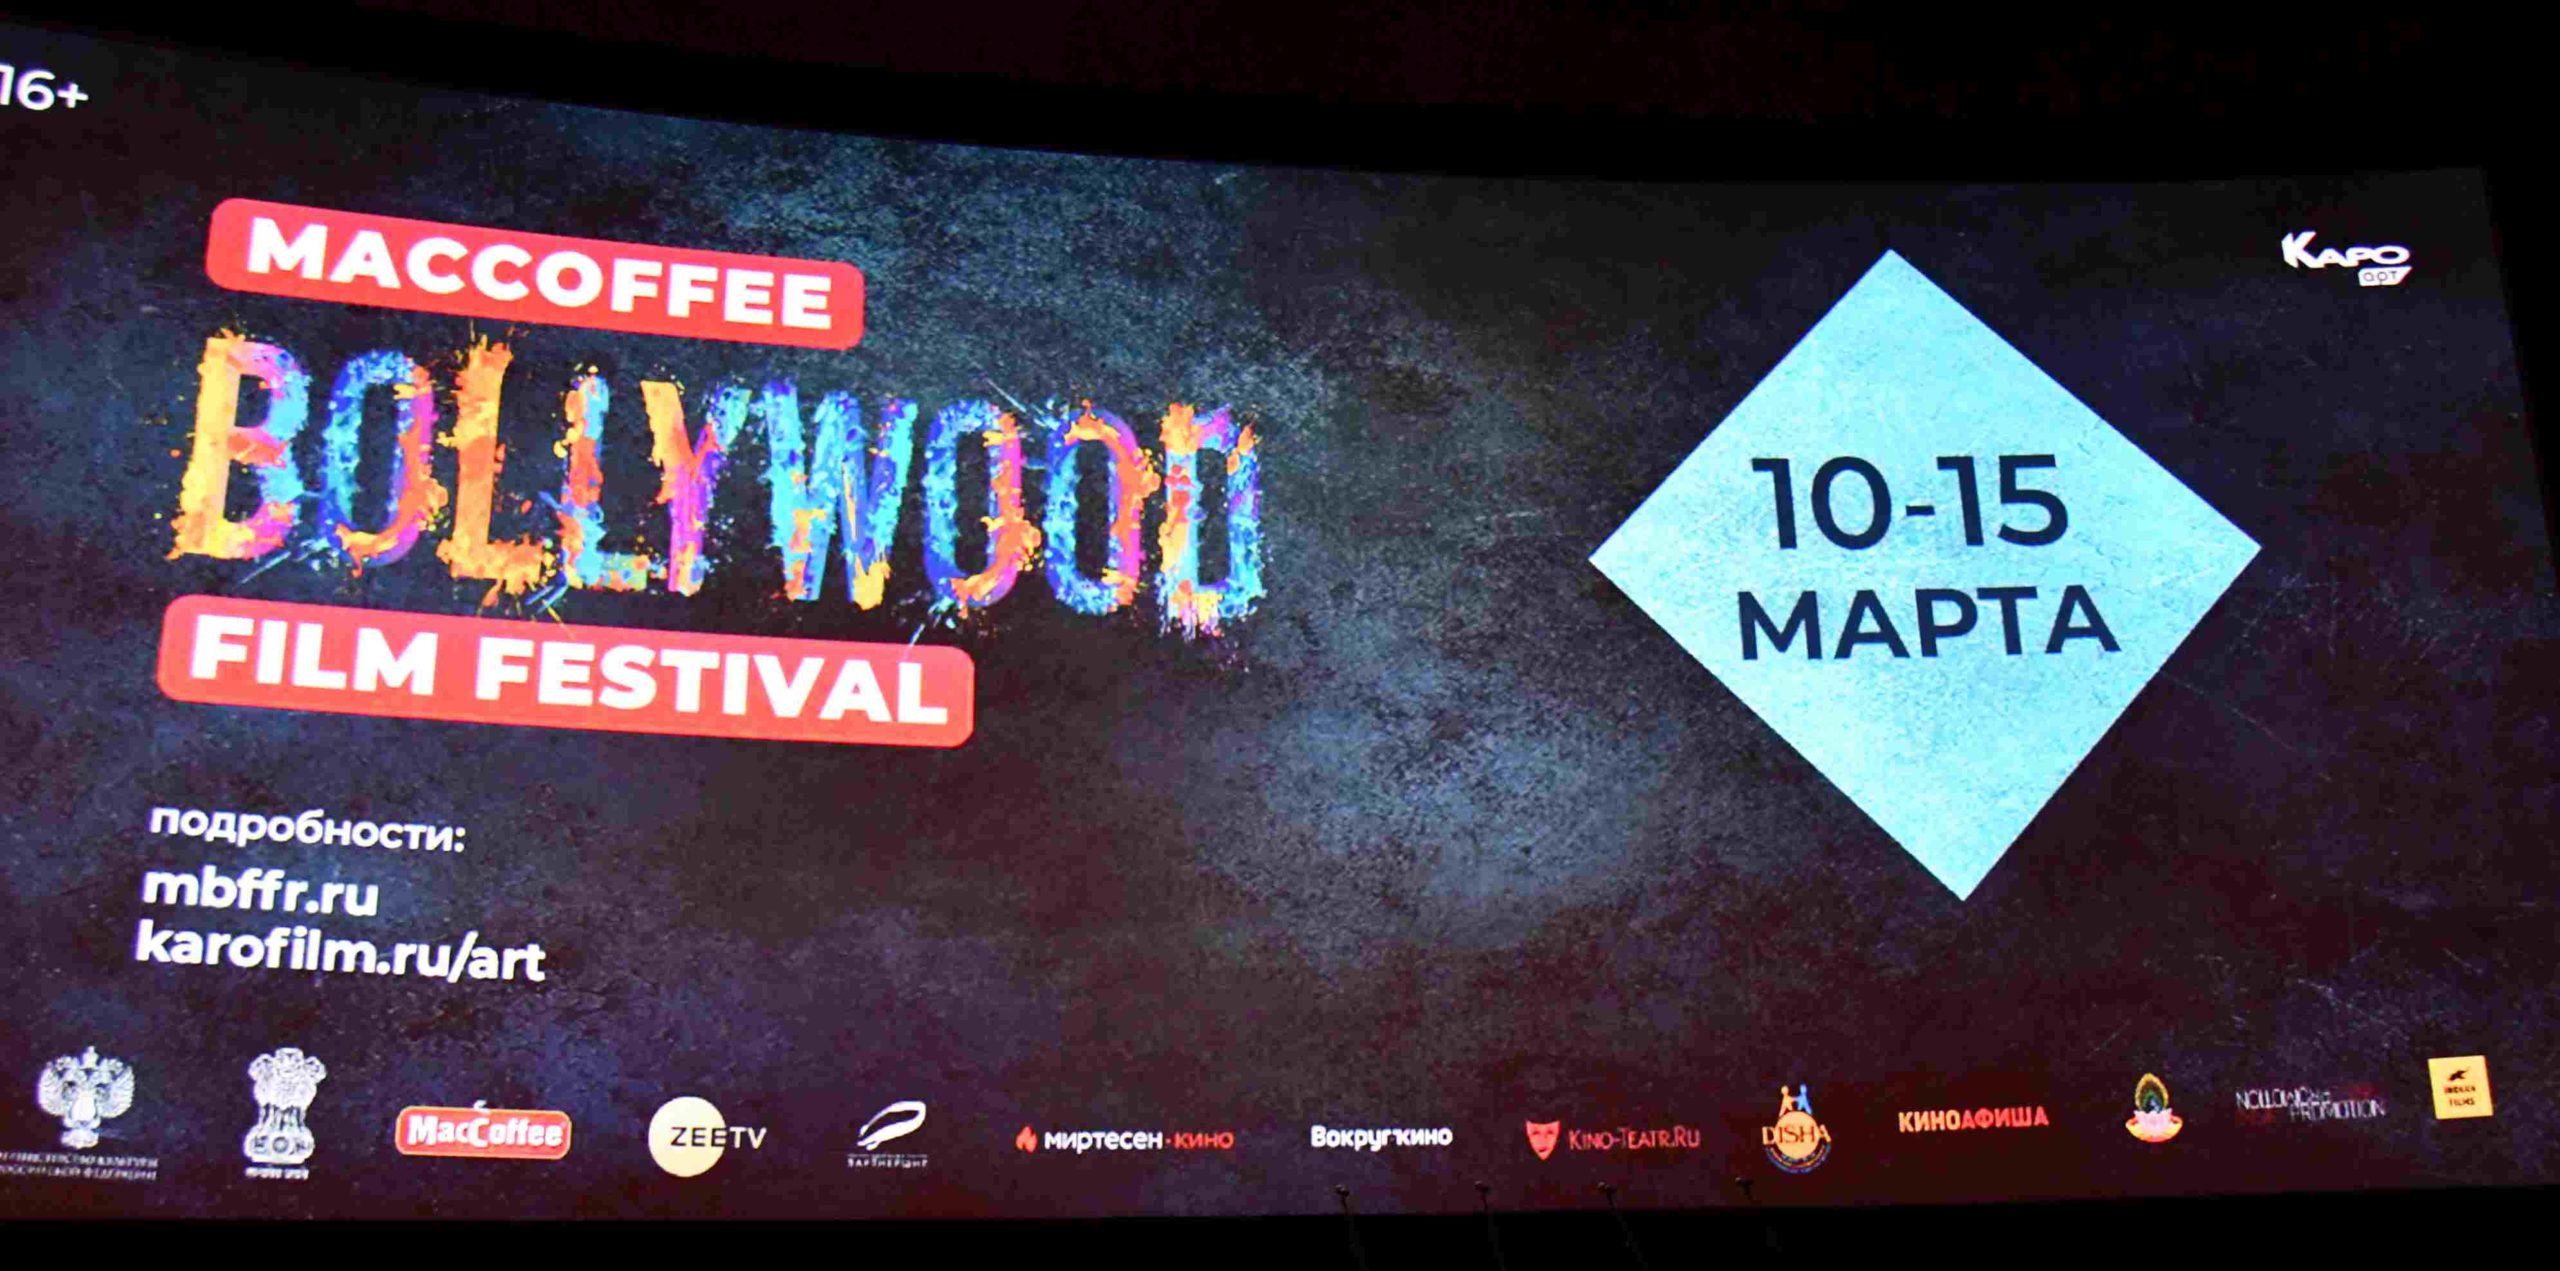 Mccoffee BOLLYWOOD Film Festival opening (10-Mar-2020)